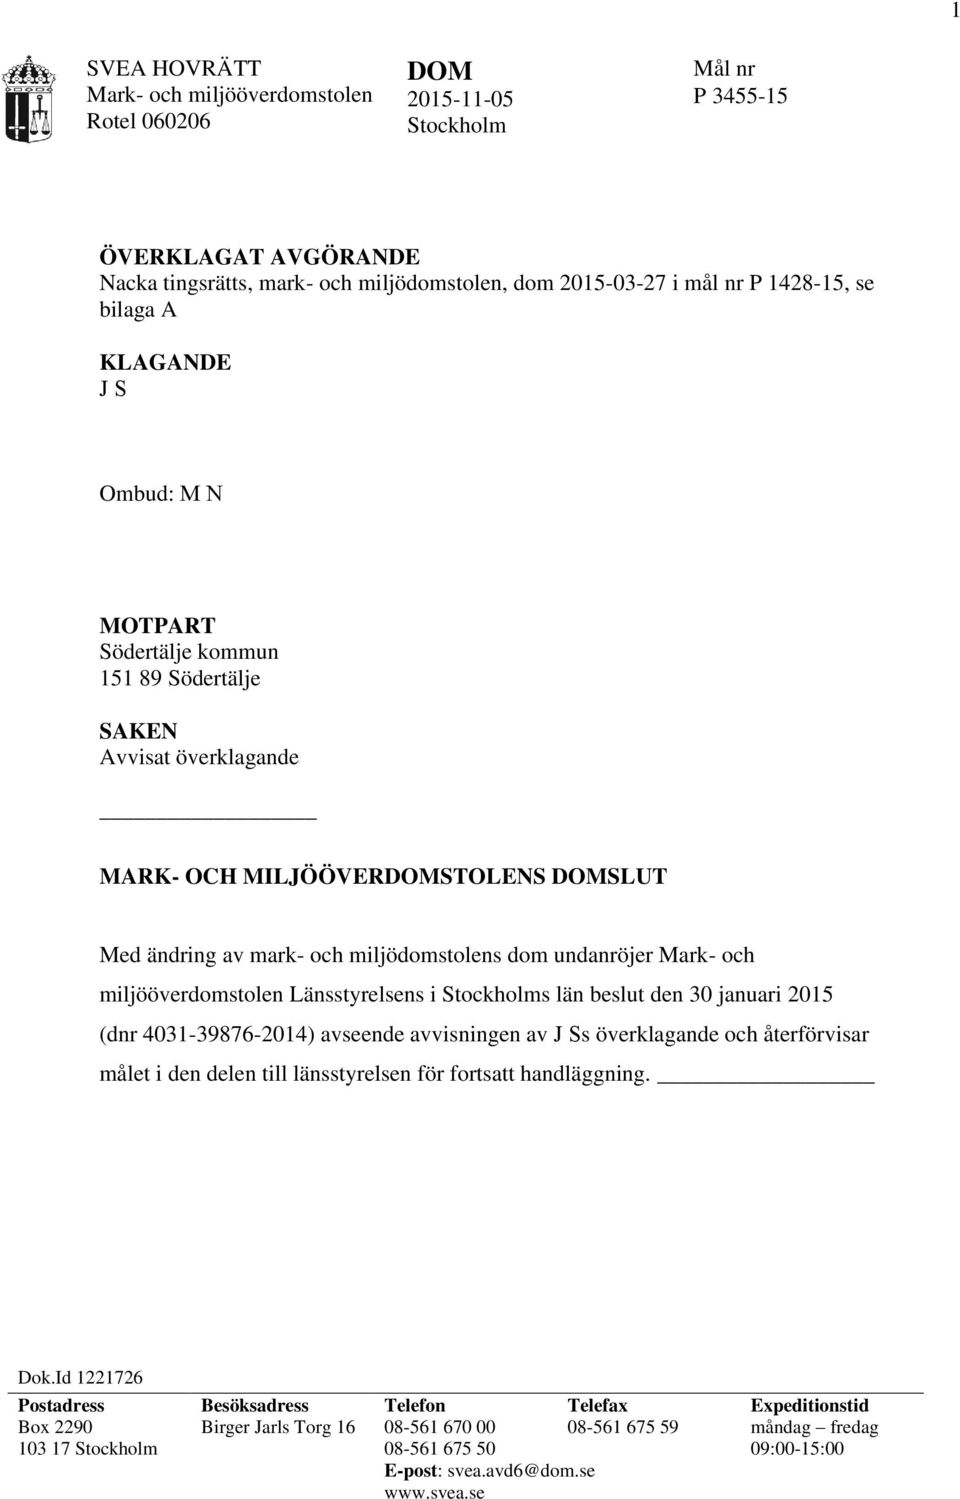 miljööverdomstolen Länsstyrelsens i Stockholms län beslut den 30 januari 2015 (dnr 4031-39876-2014) avseende avvisningen av J Ss överklagande och återförvisar målet i den delen till länsstyrelsen för